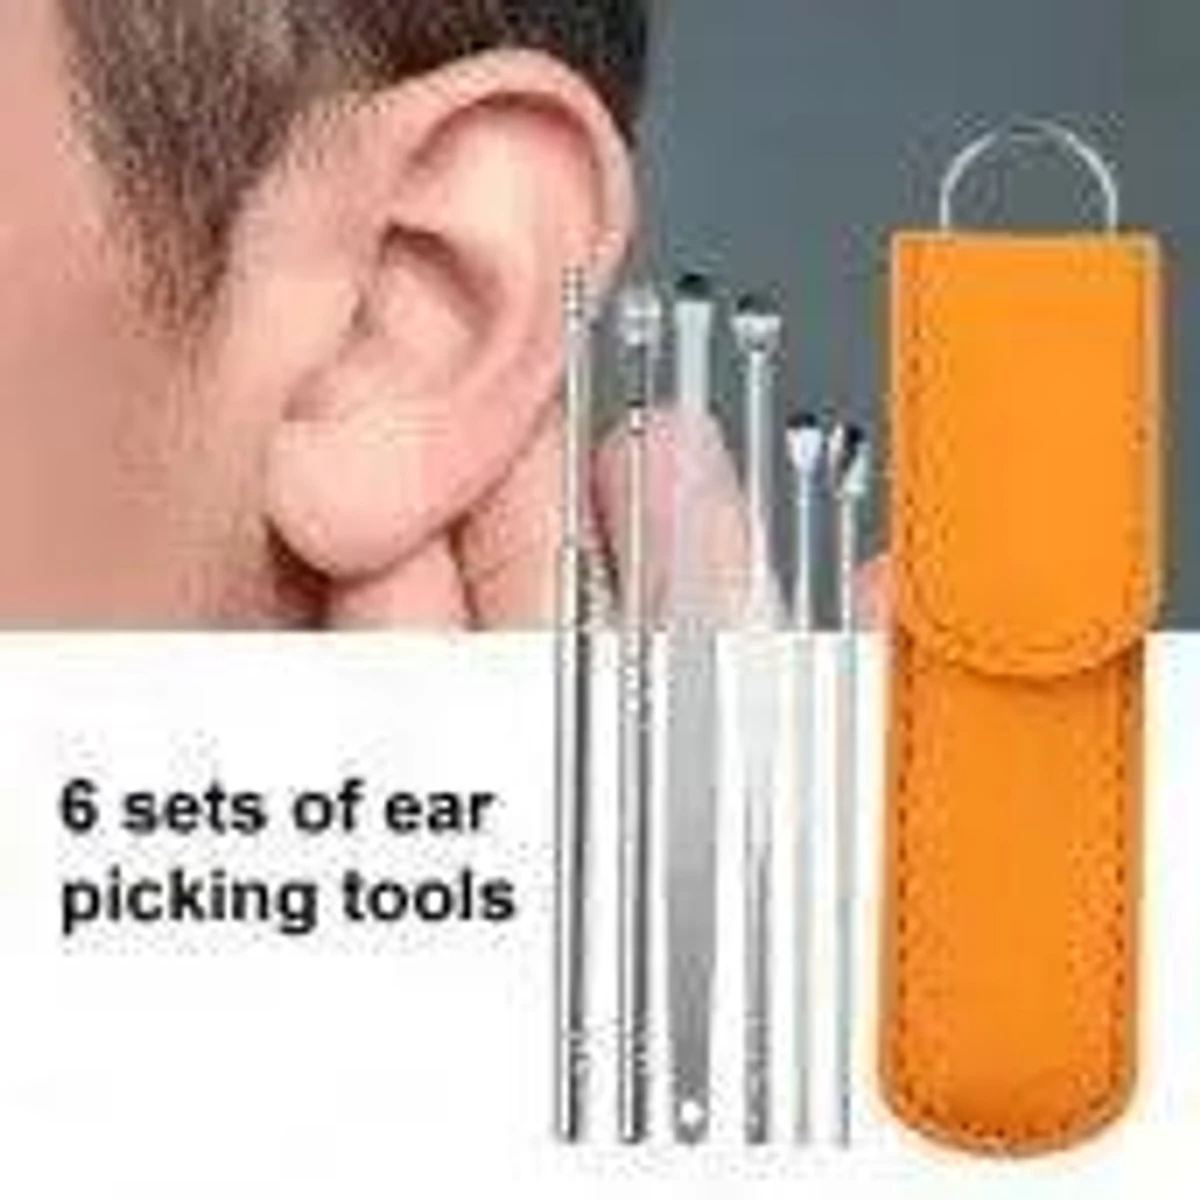 6 Pcs Ear Cleaner